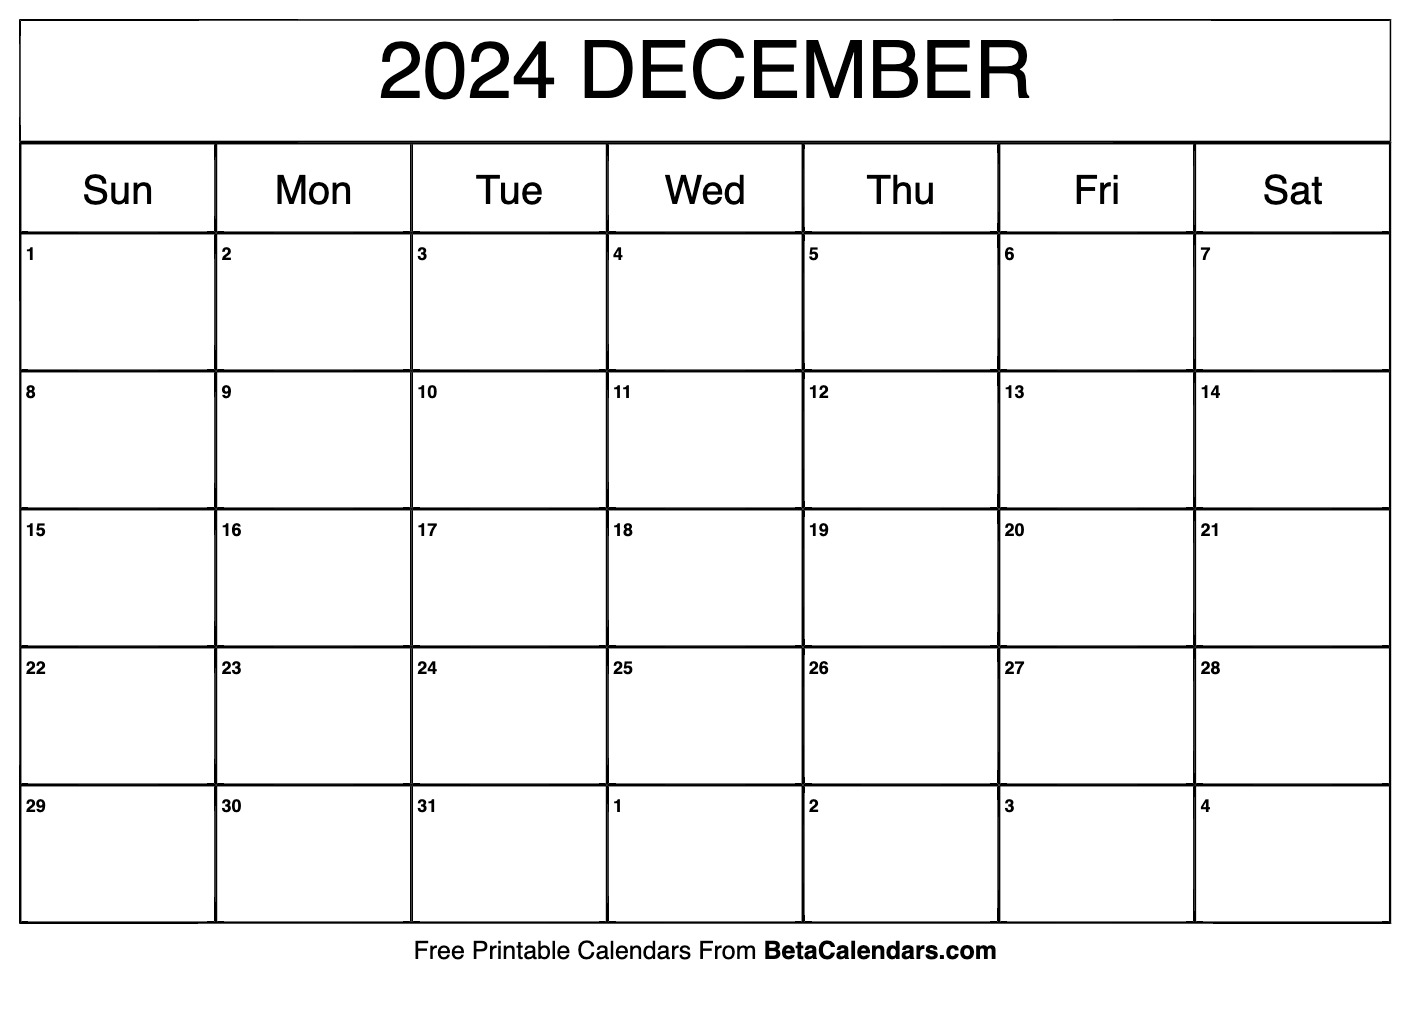 Free Calendar December 2024 Leia Shauna